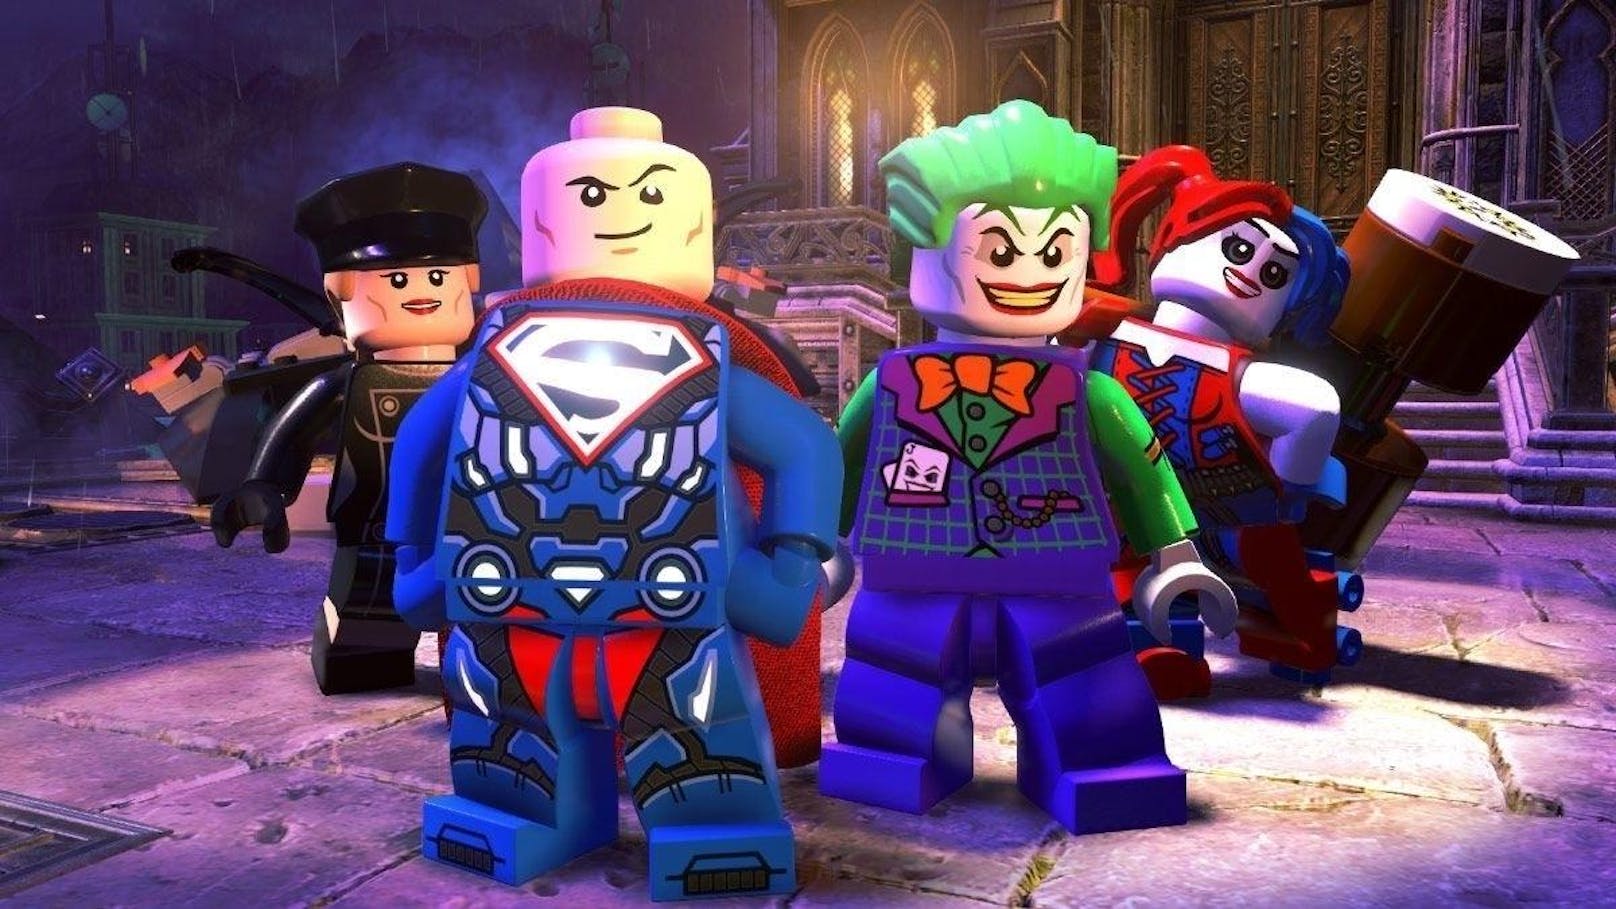  <a href="https://www.heute.at/digital/games/story/Lego-DC-Super-Villains-Test-Review-Das-neue-Lego-Game-ist-einfach-schurkisch-gut-44124067" target="_blank">LEGO DC Super-Villains</a>